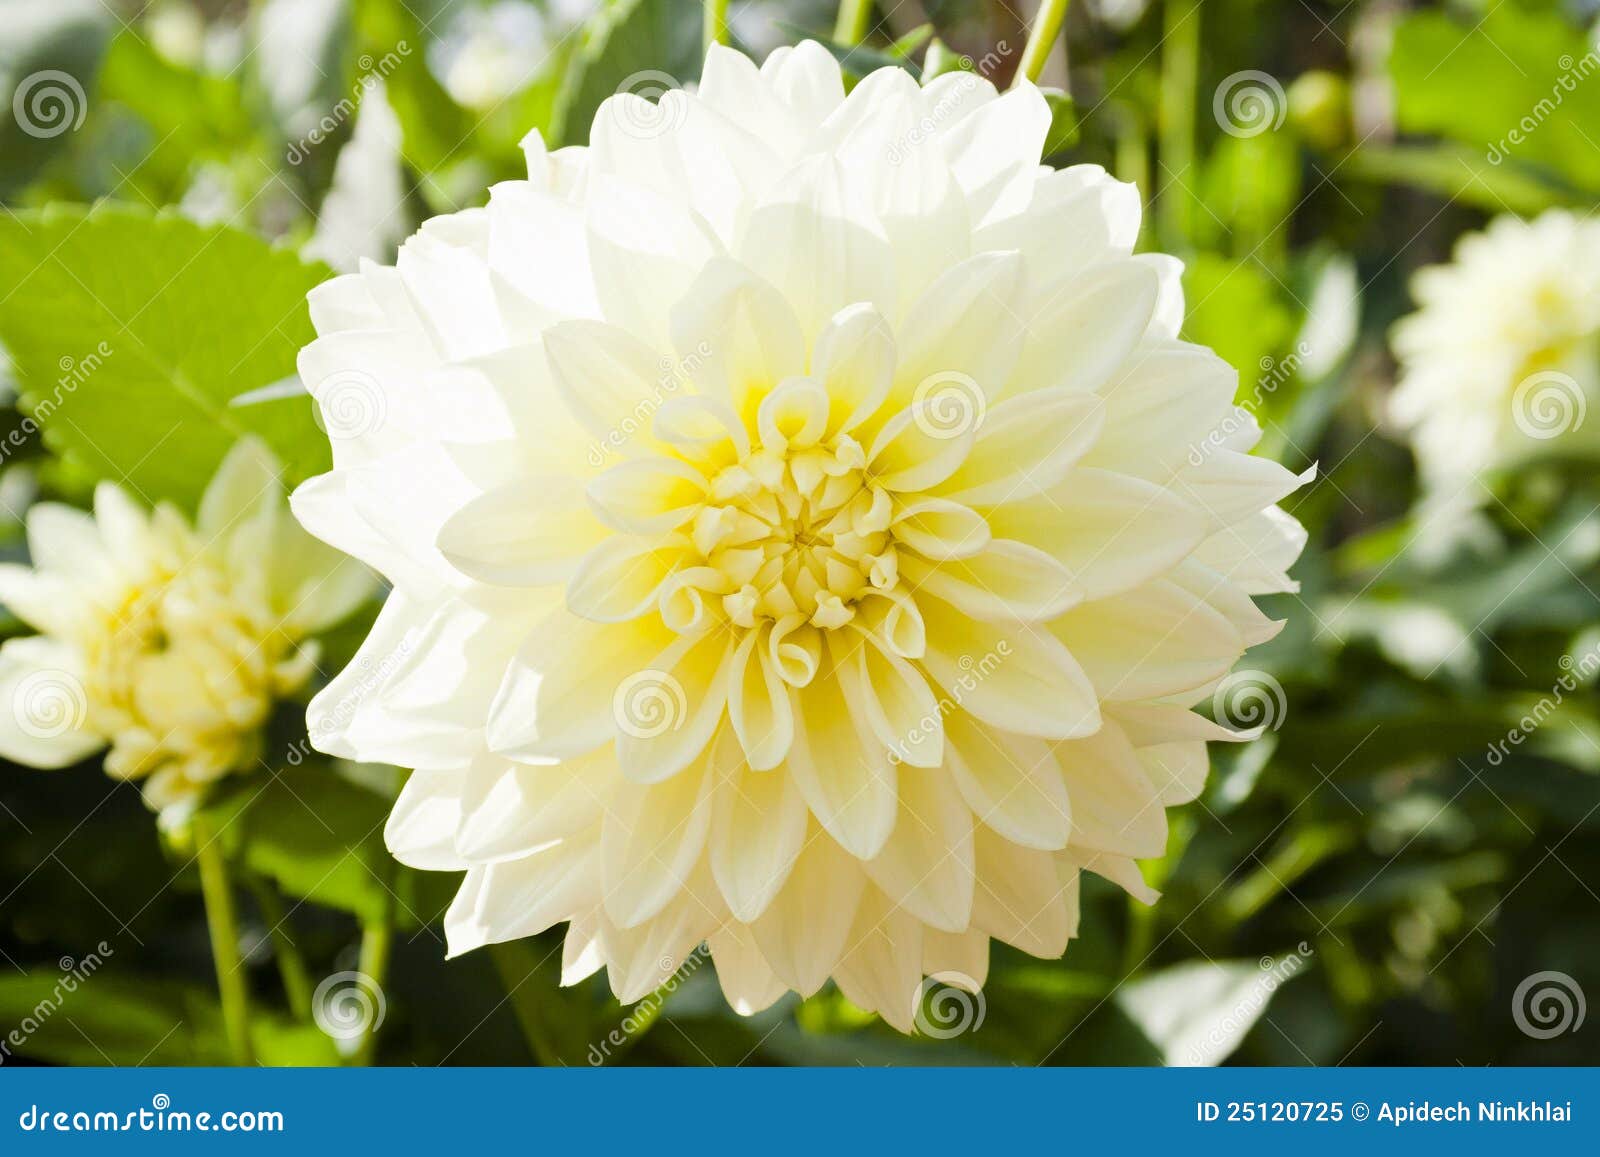 Flores blancas de la dalia imagen de archivo. Imagen de contexto - 25120725